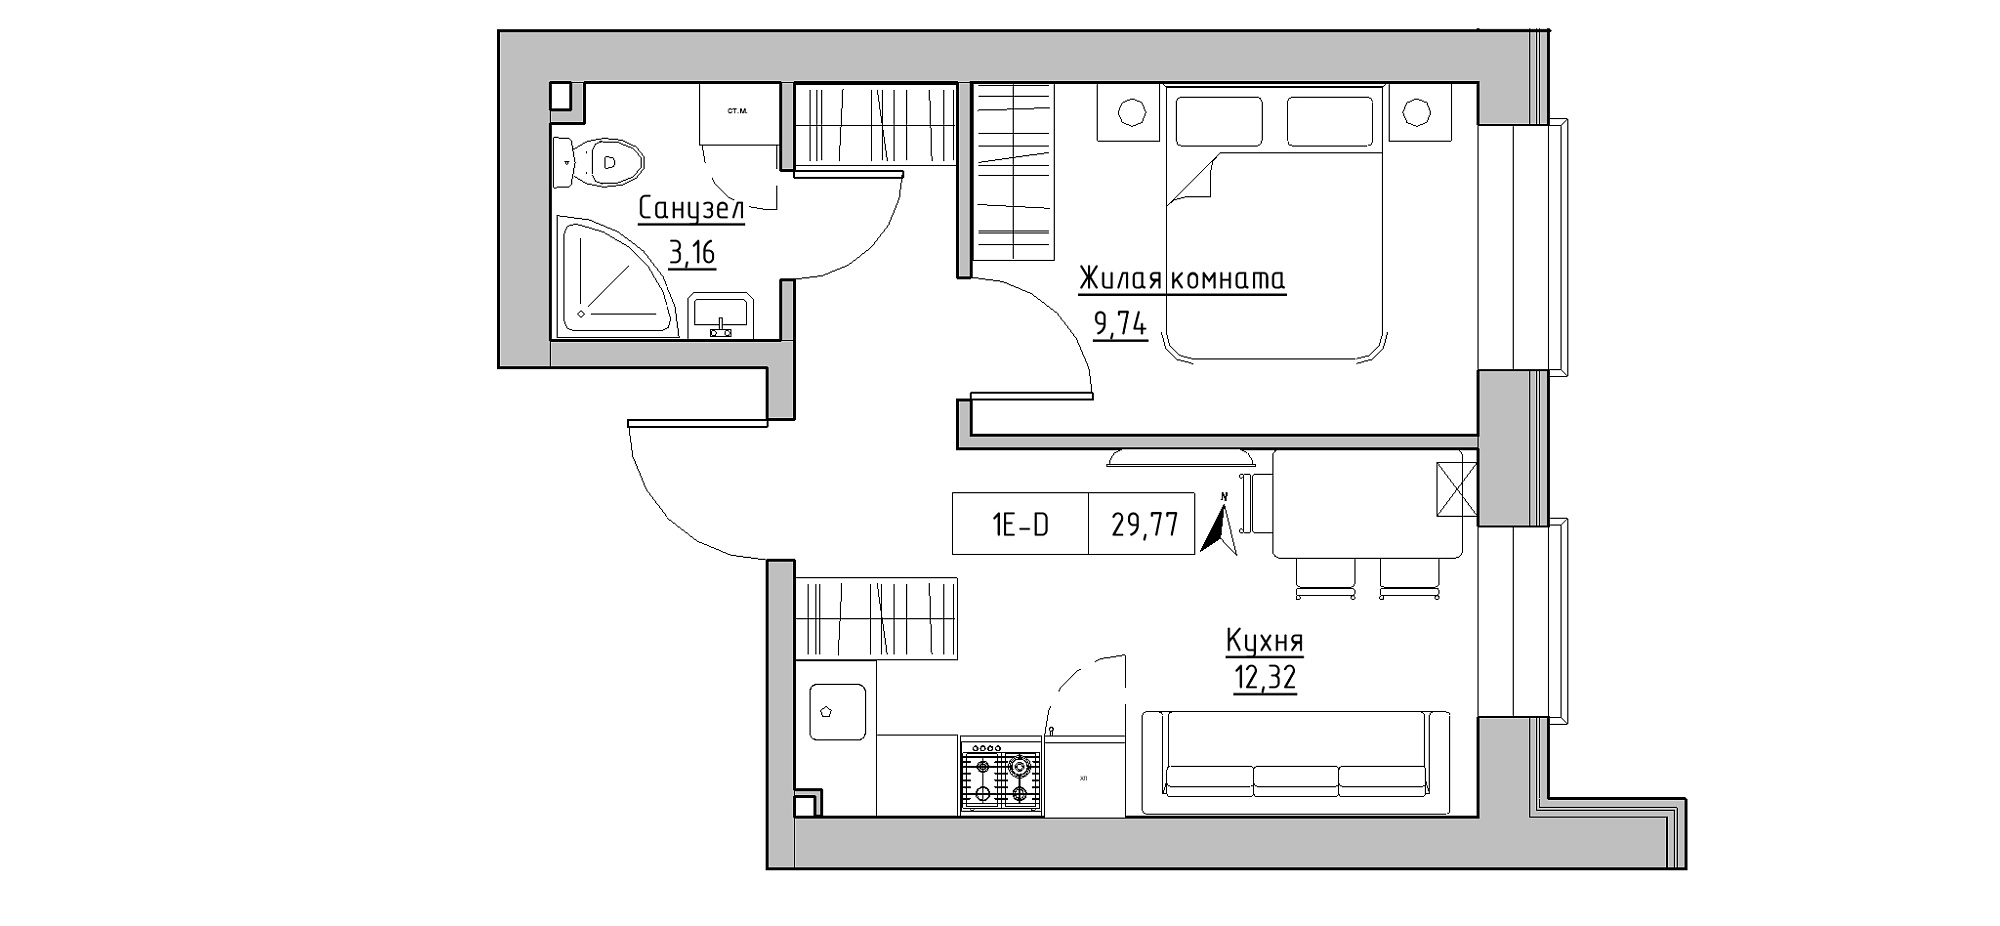 Планировка 1-к квартира площей 29.77м2, KS-020-01/0013.